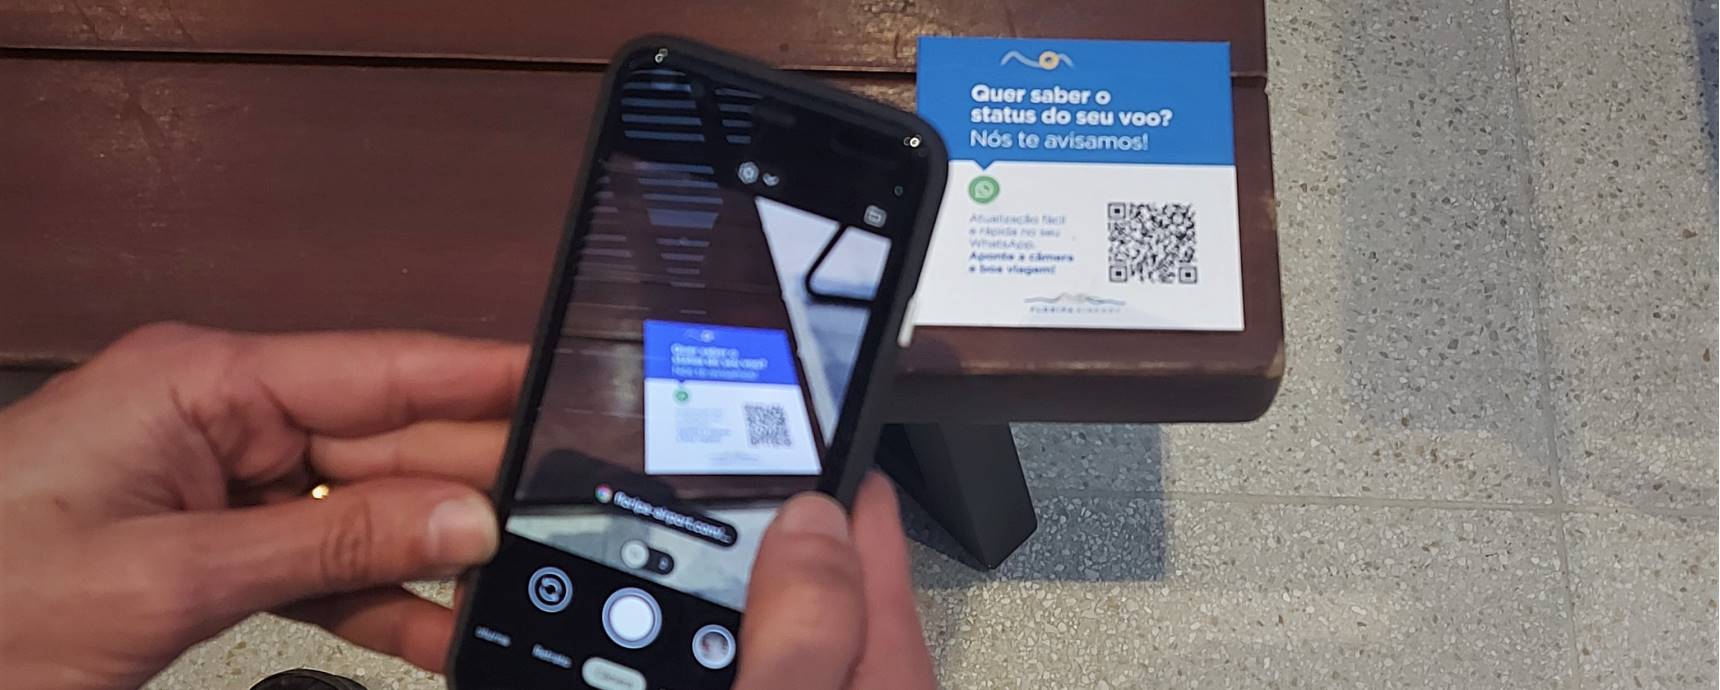 Aeropuerto de Zúrich Brasil prueba servicio de mensajes de estado de vuelos a través de WhatsApp